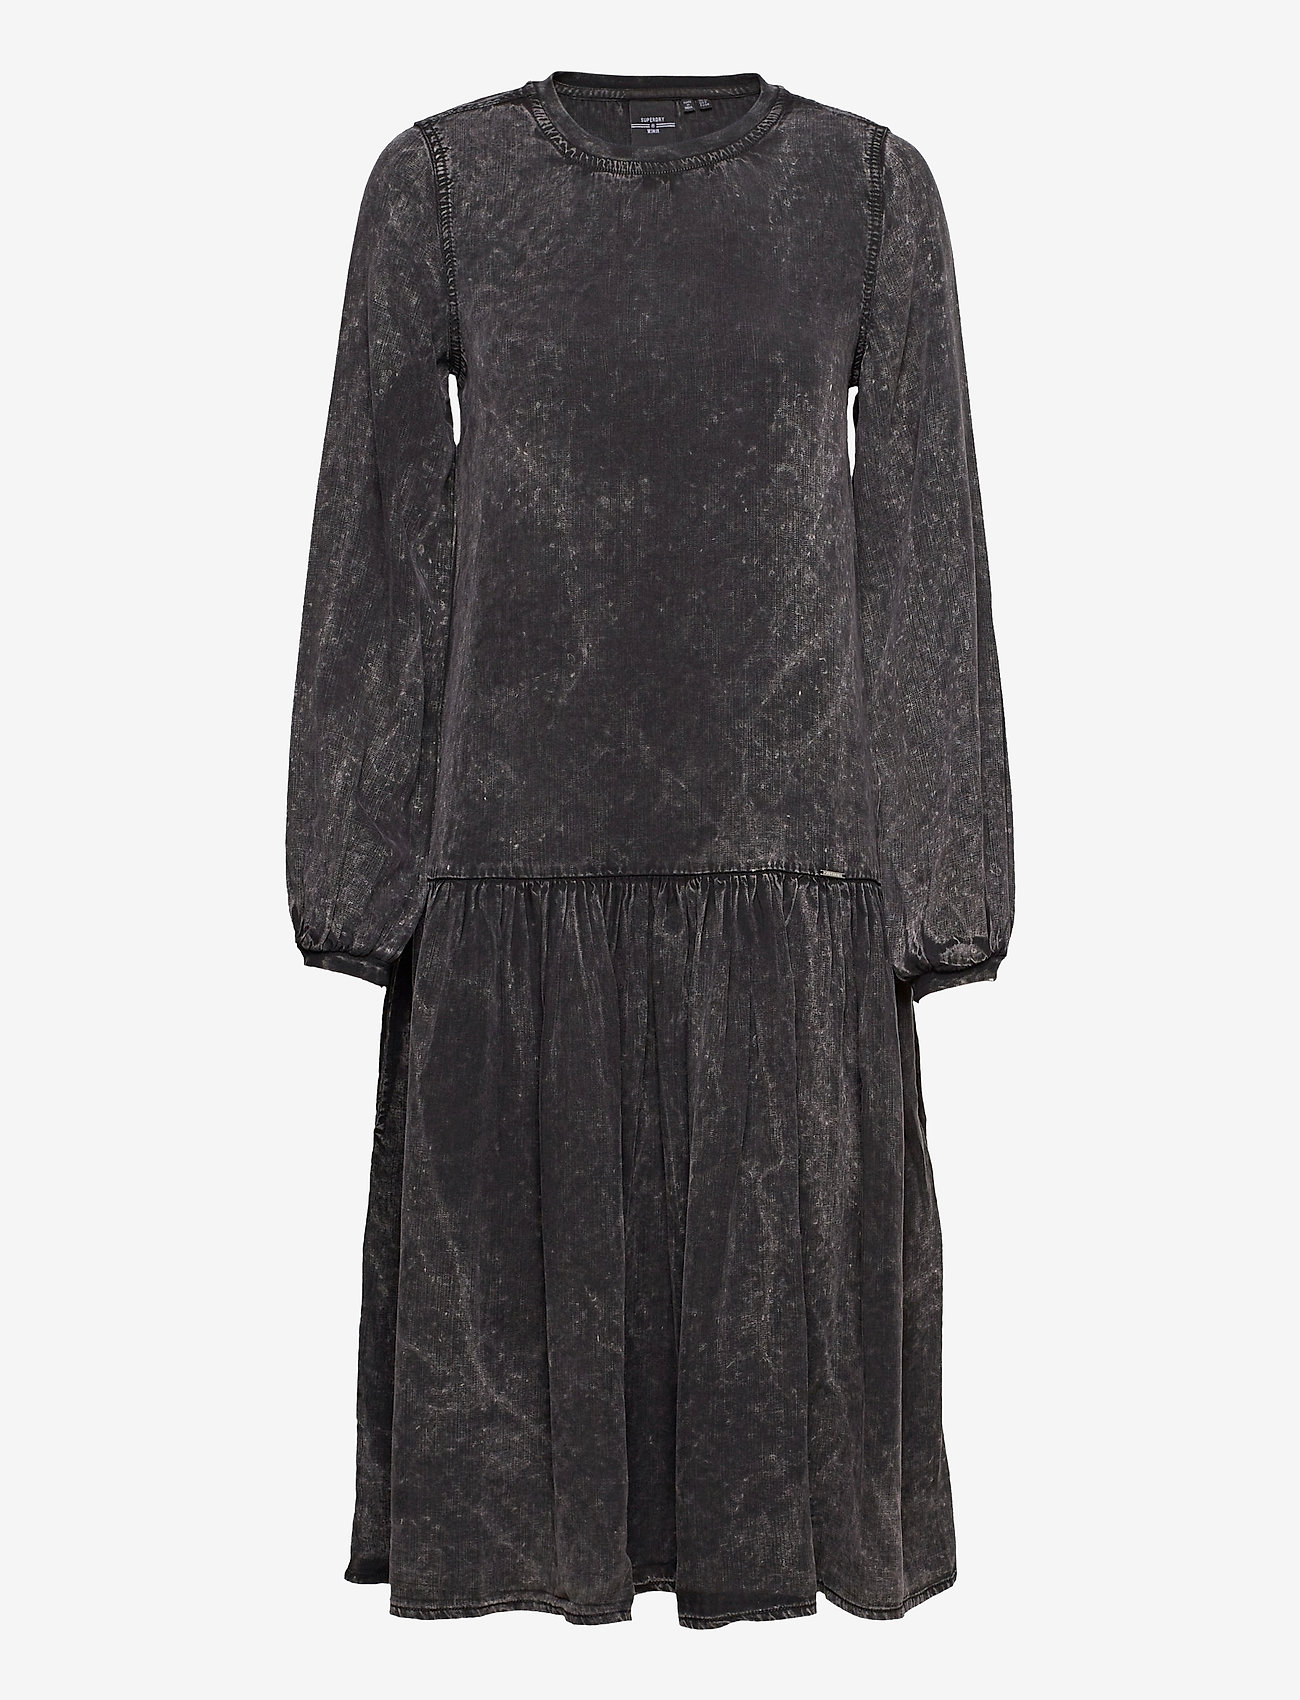 Superdry - Mia Midi Dress - sukienki dżinsowe - washed black - 0